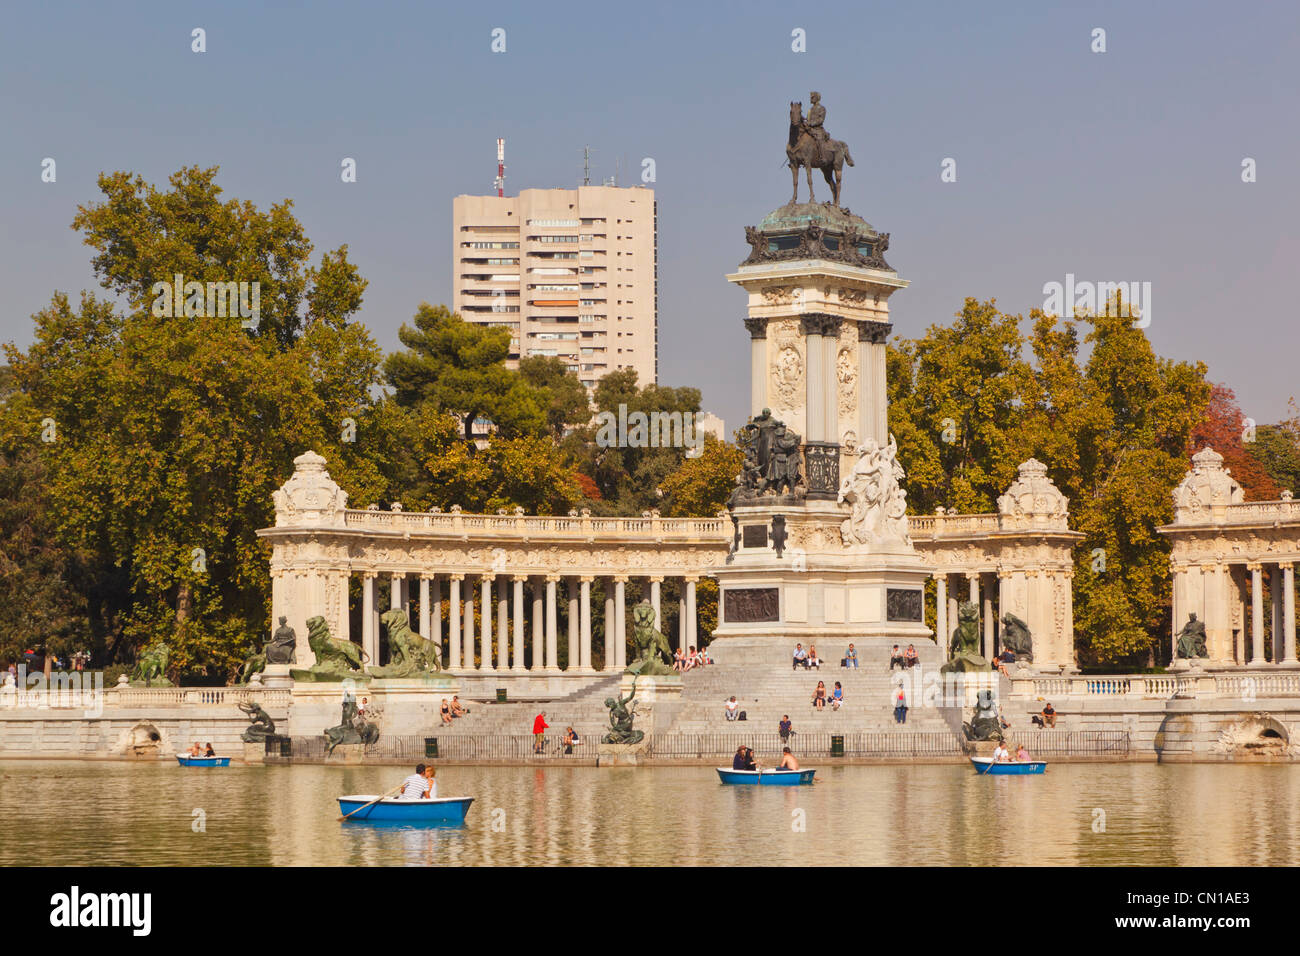 Madrid, Espagne. De l'aviron sur l'Estanque, ou d'un lac, dans les jardins d'El Retiro. Monument au roi Alphonse XII en arrière-plan. Banque D'Images